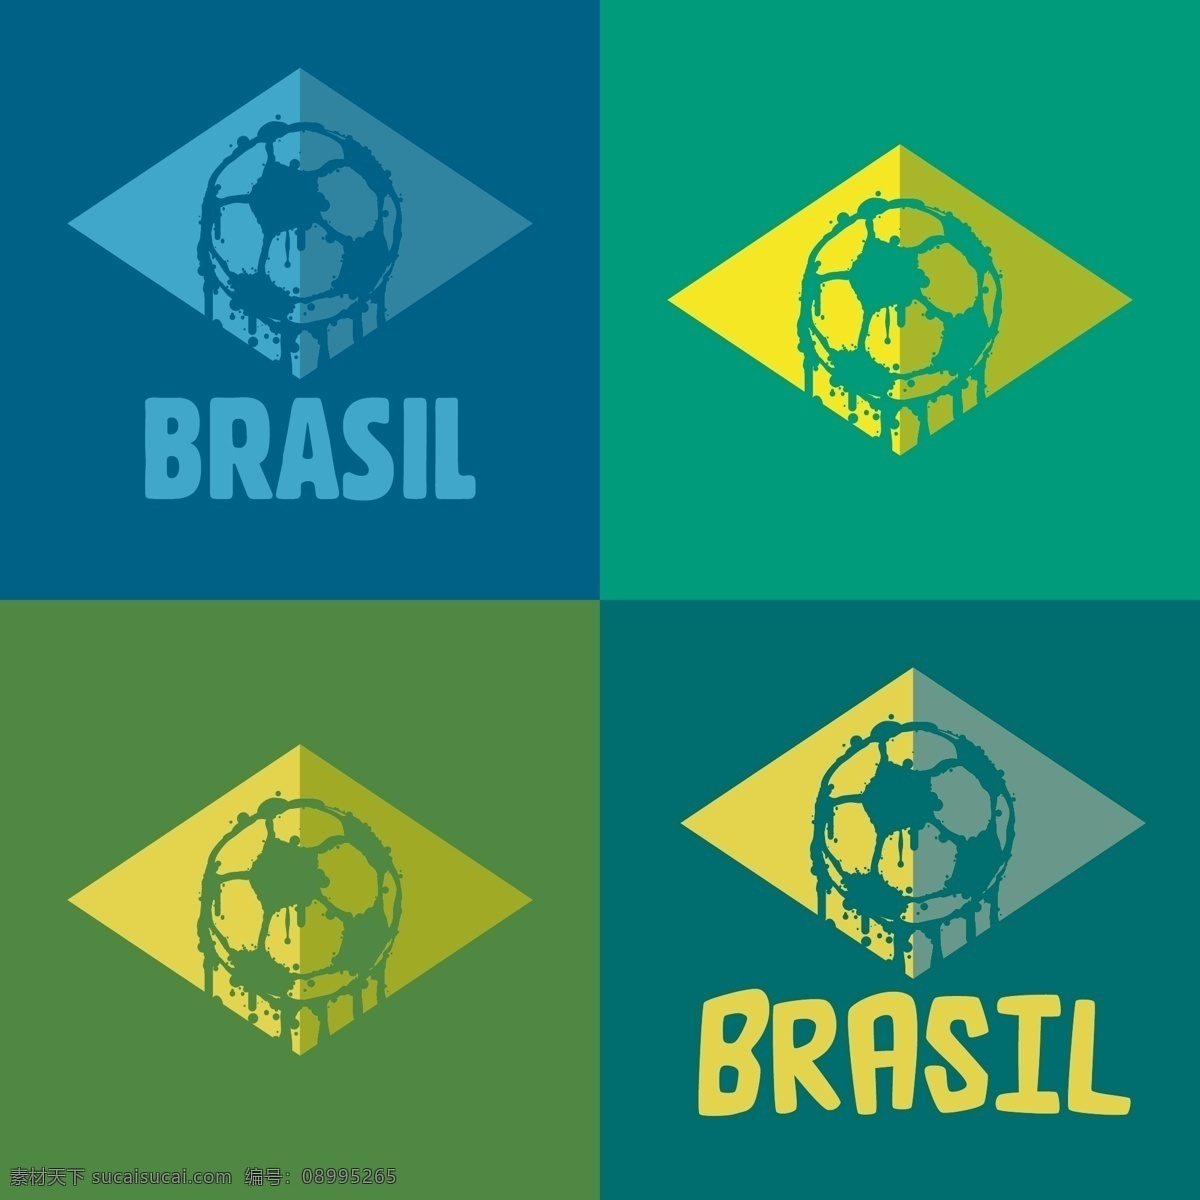 巴西 世界杯 标志 模板下载 足球 足球赛事 足球比赛 世界杯素材 体育运动 生活百科 矢量素材 青色 天蓝色